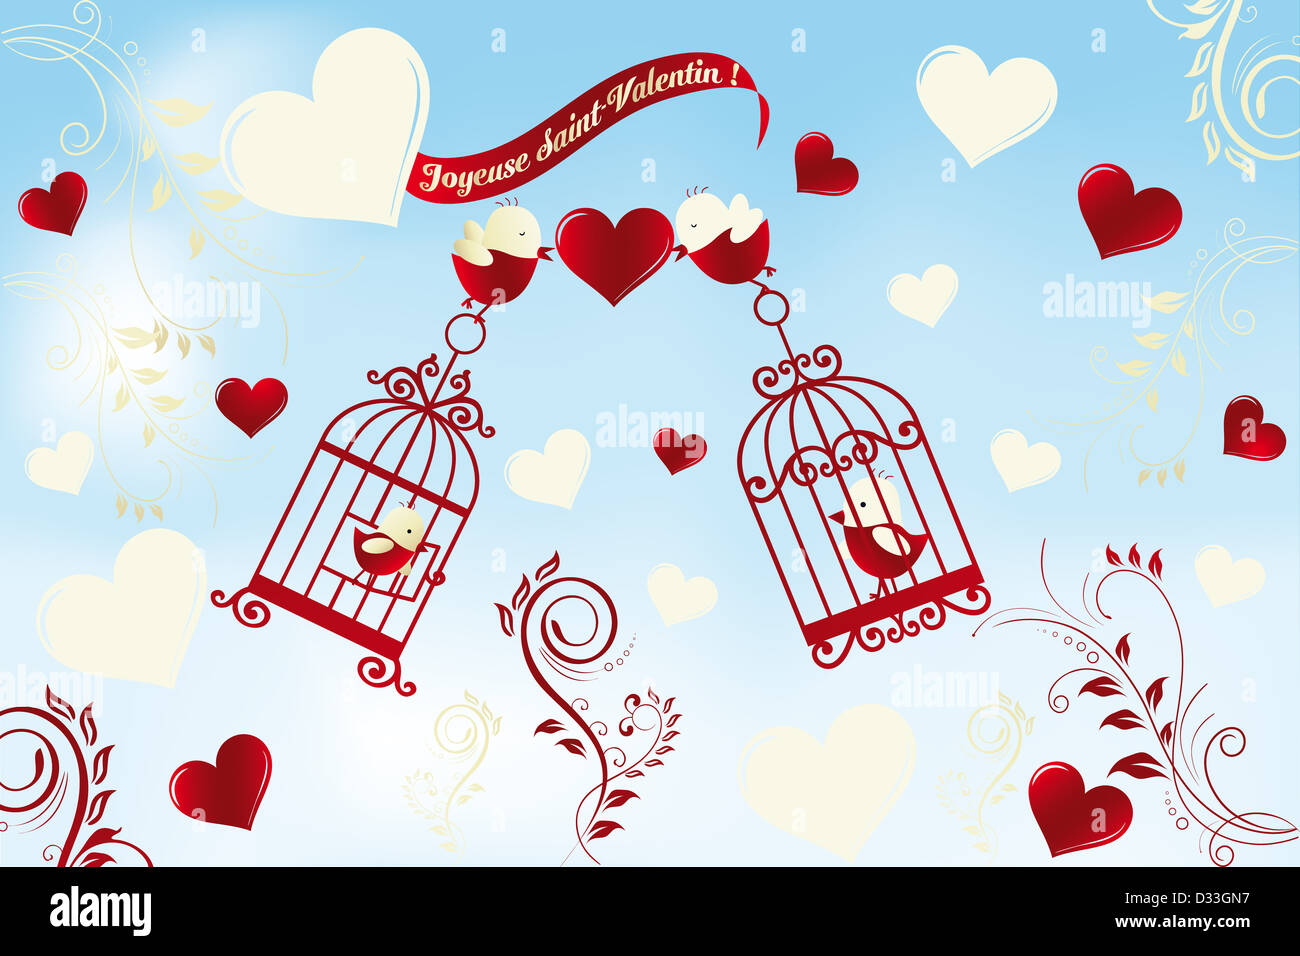 Valentinstag Karte In Franzosischer Sprache Joyeuse Saint Valentin Vogel In Liebe Loungeposter Stil Mit Floralen Gestaltungselemente Er Stockfotografie Alamy